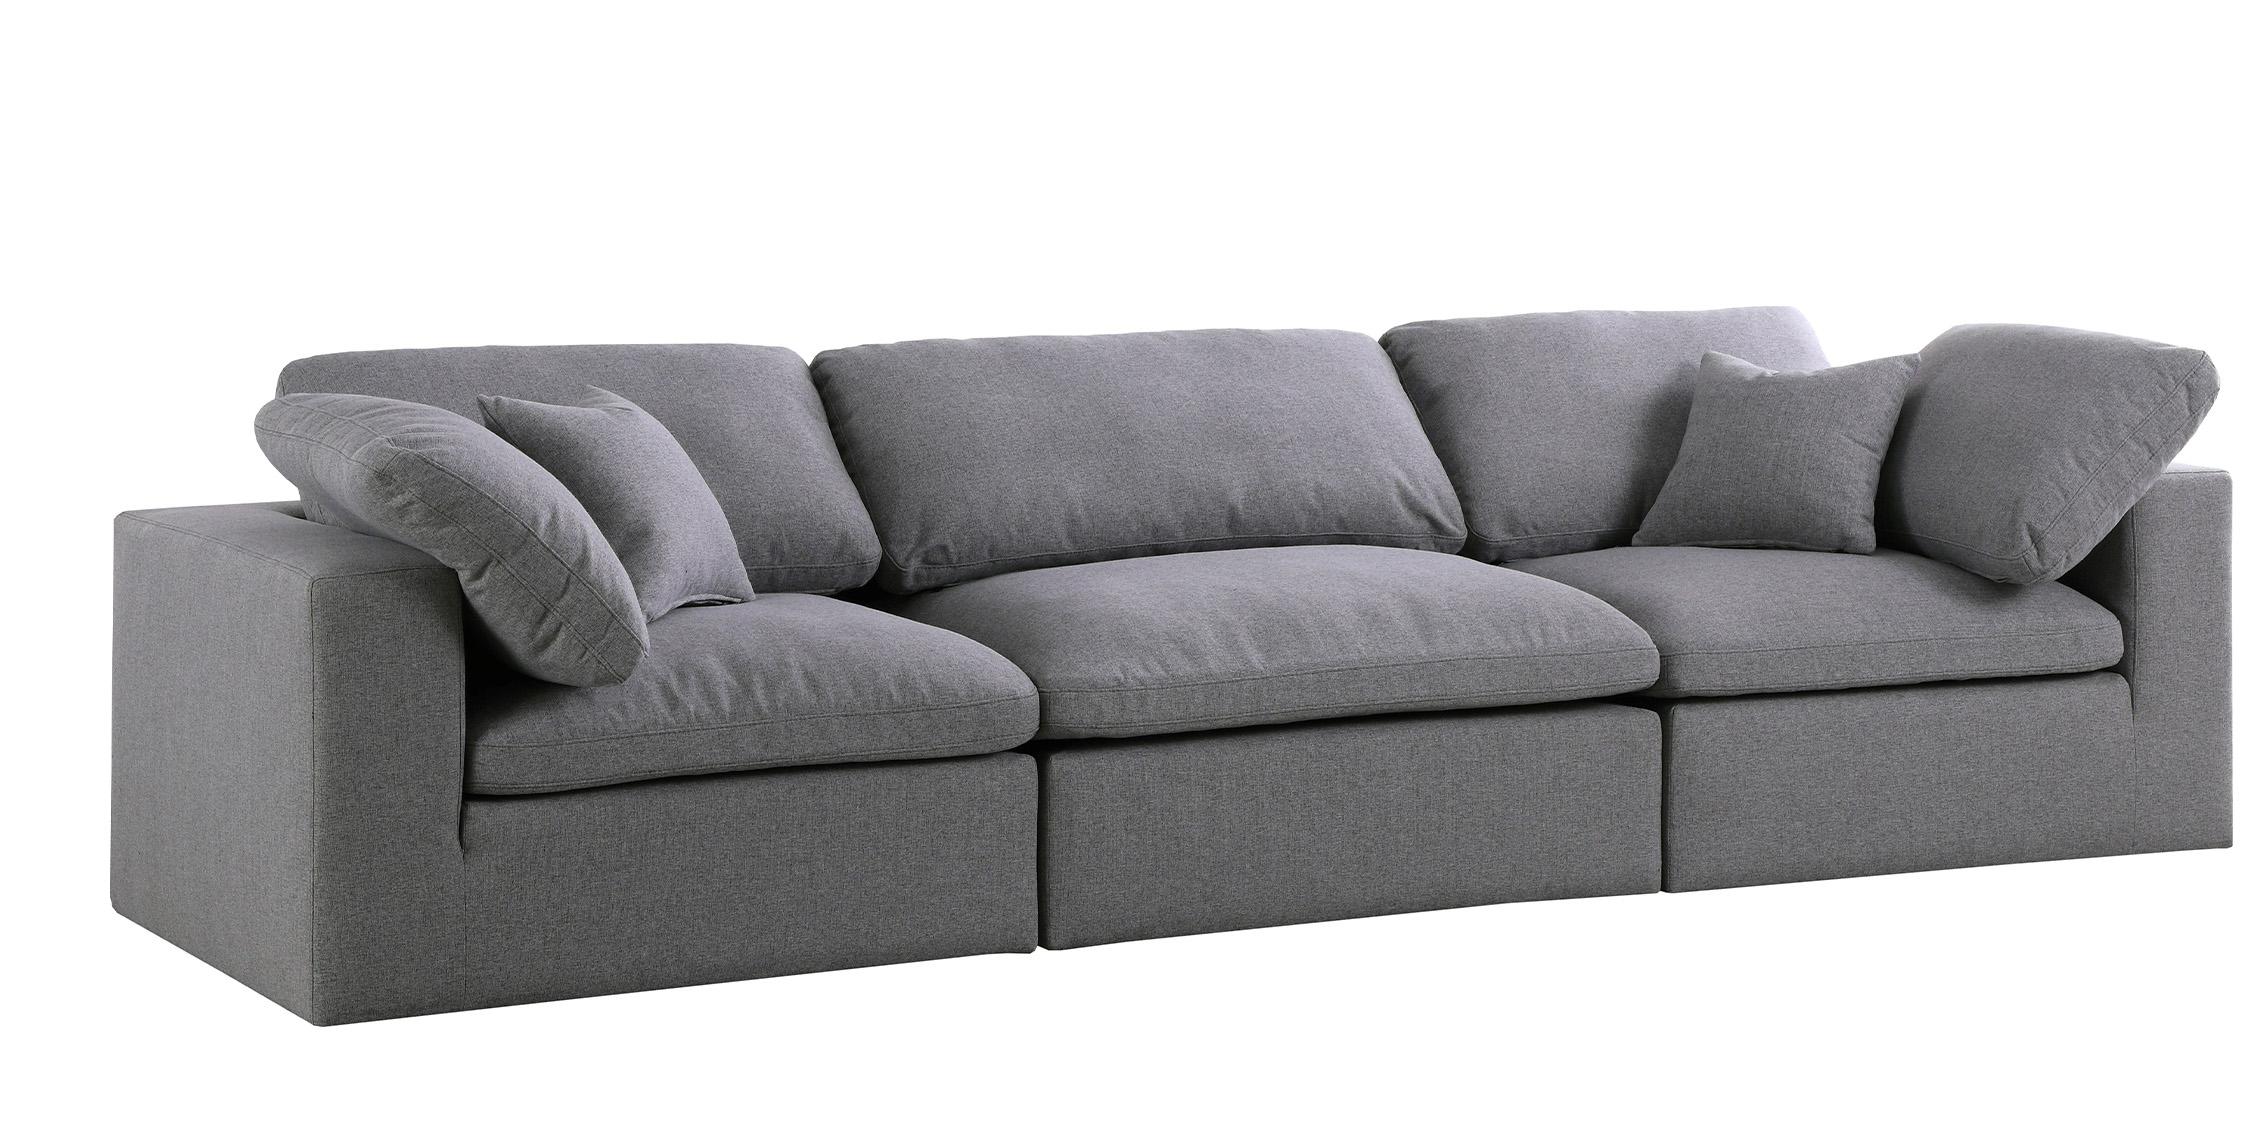 

    
Serene Grey Linen Textured Fabric Deluxe Comfort Modular Sofa S119 Meridian
